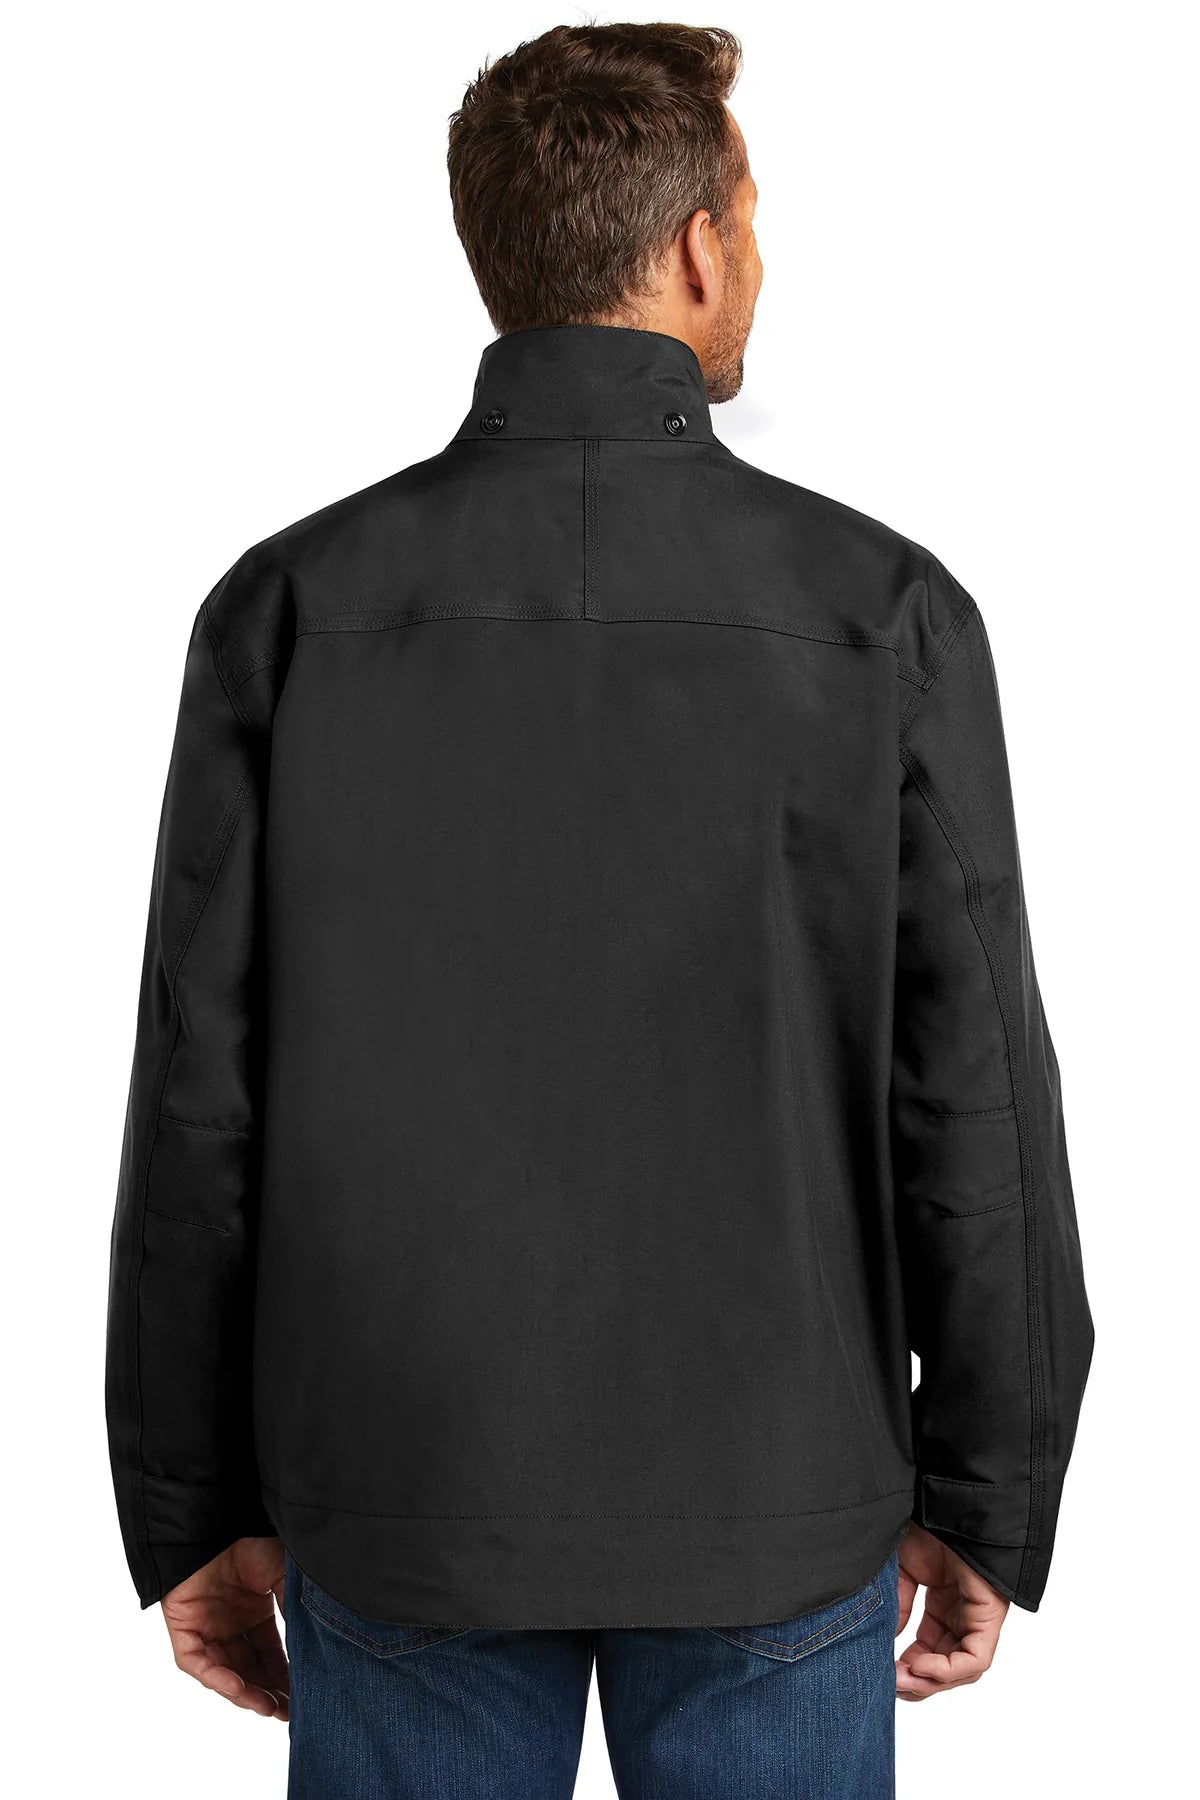 carhartt_ctj162 _black_company_logo_jackets